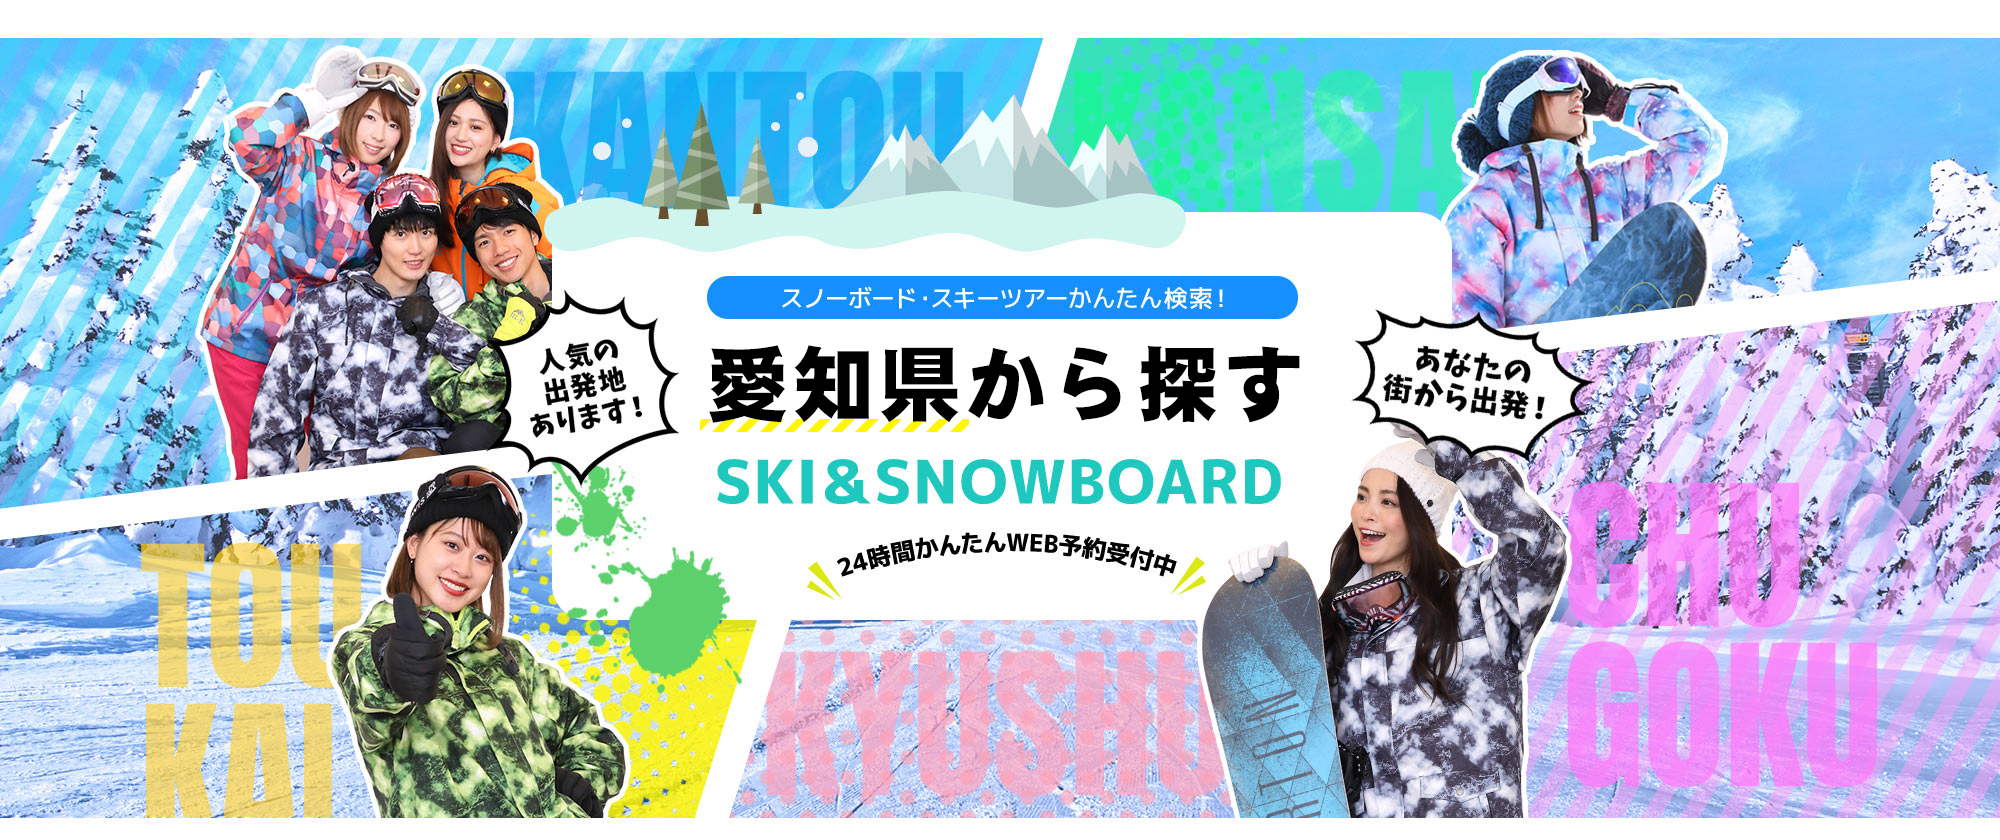 スノーボード・スキーツアーかんたん検索！ 愛知から探す SKI&SNOWBOARD